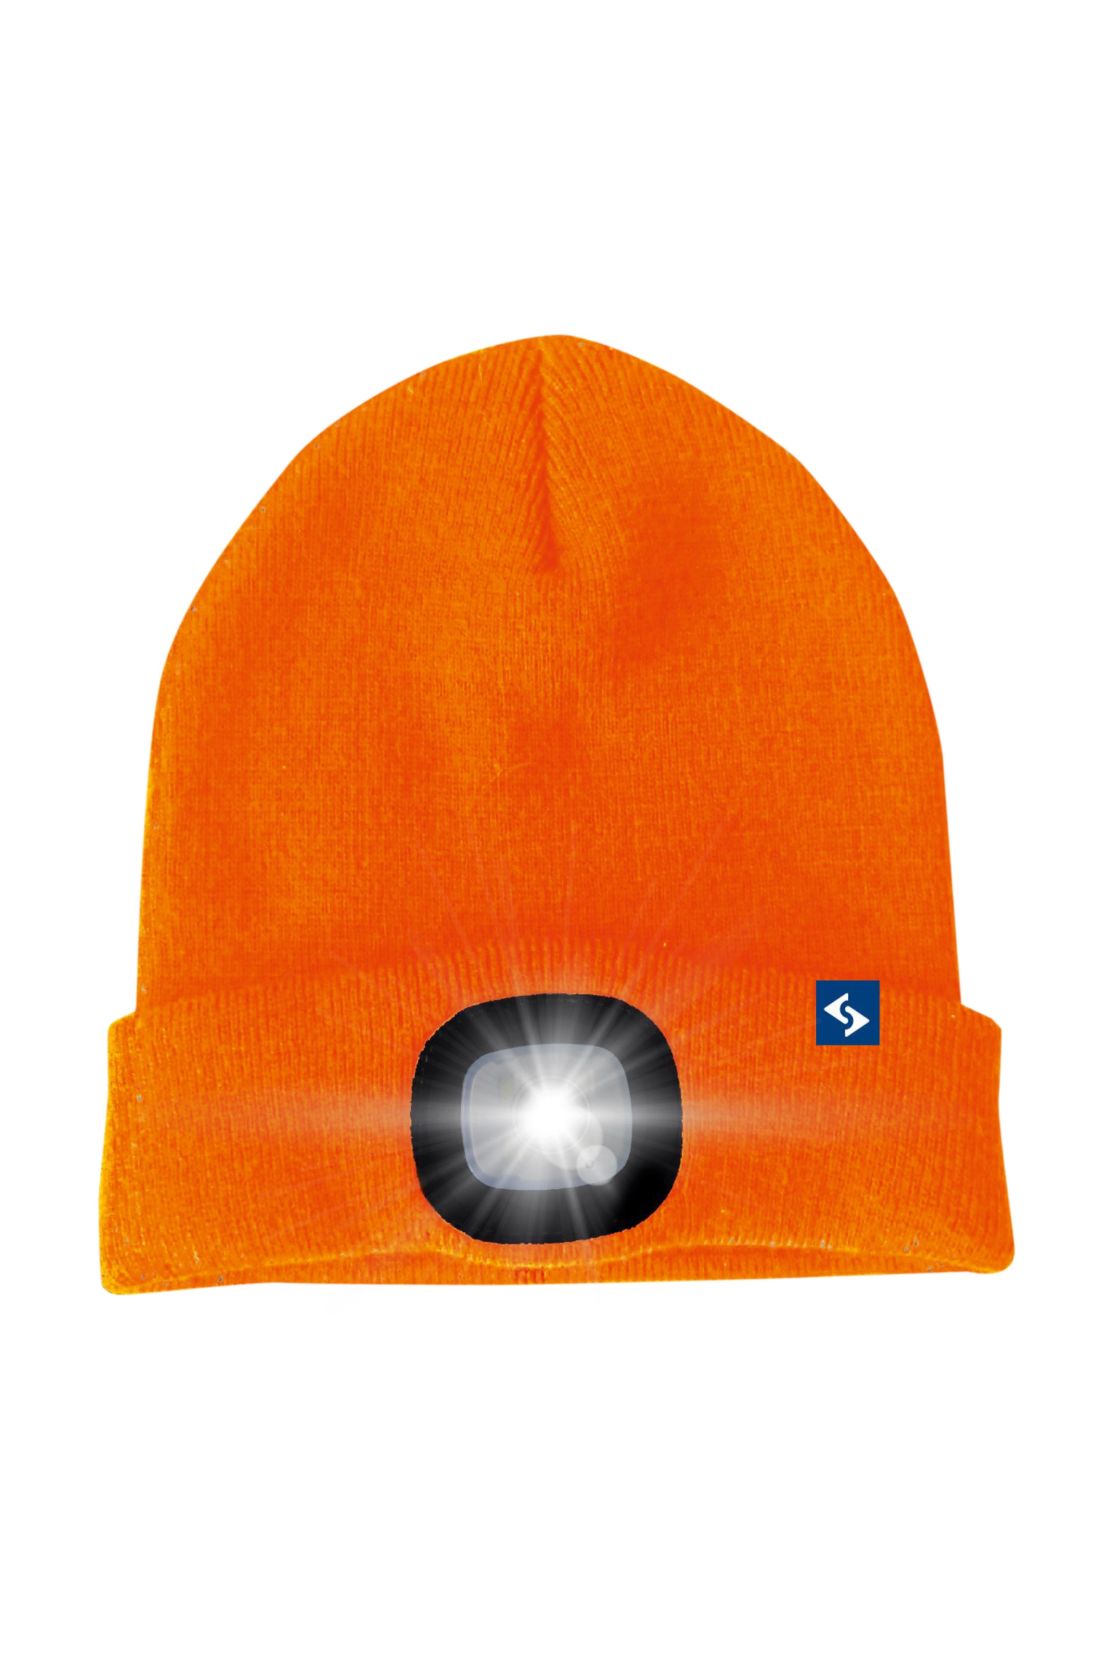 LED Mütze Malix, orange, orange